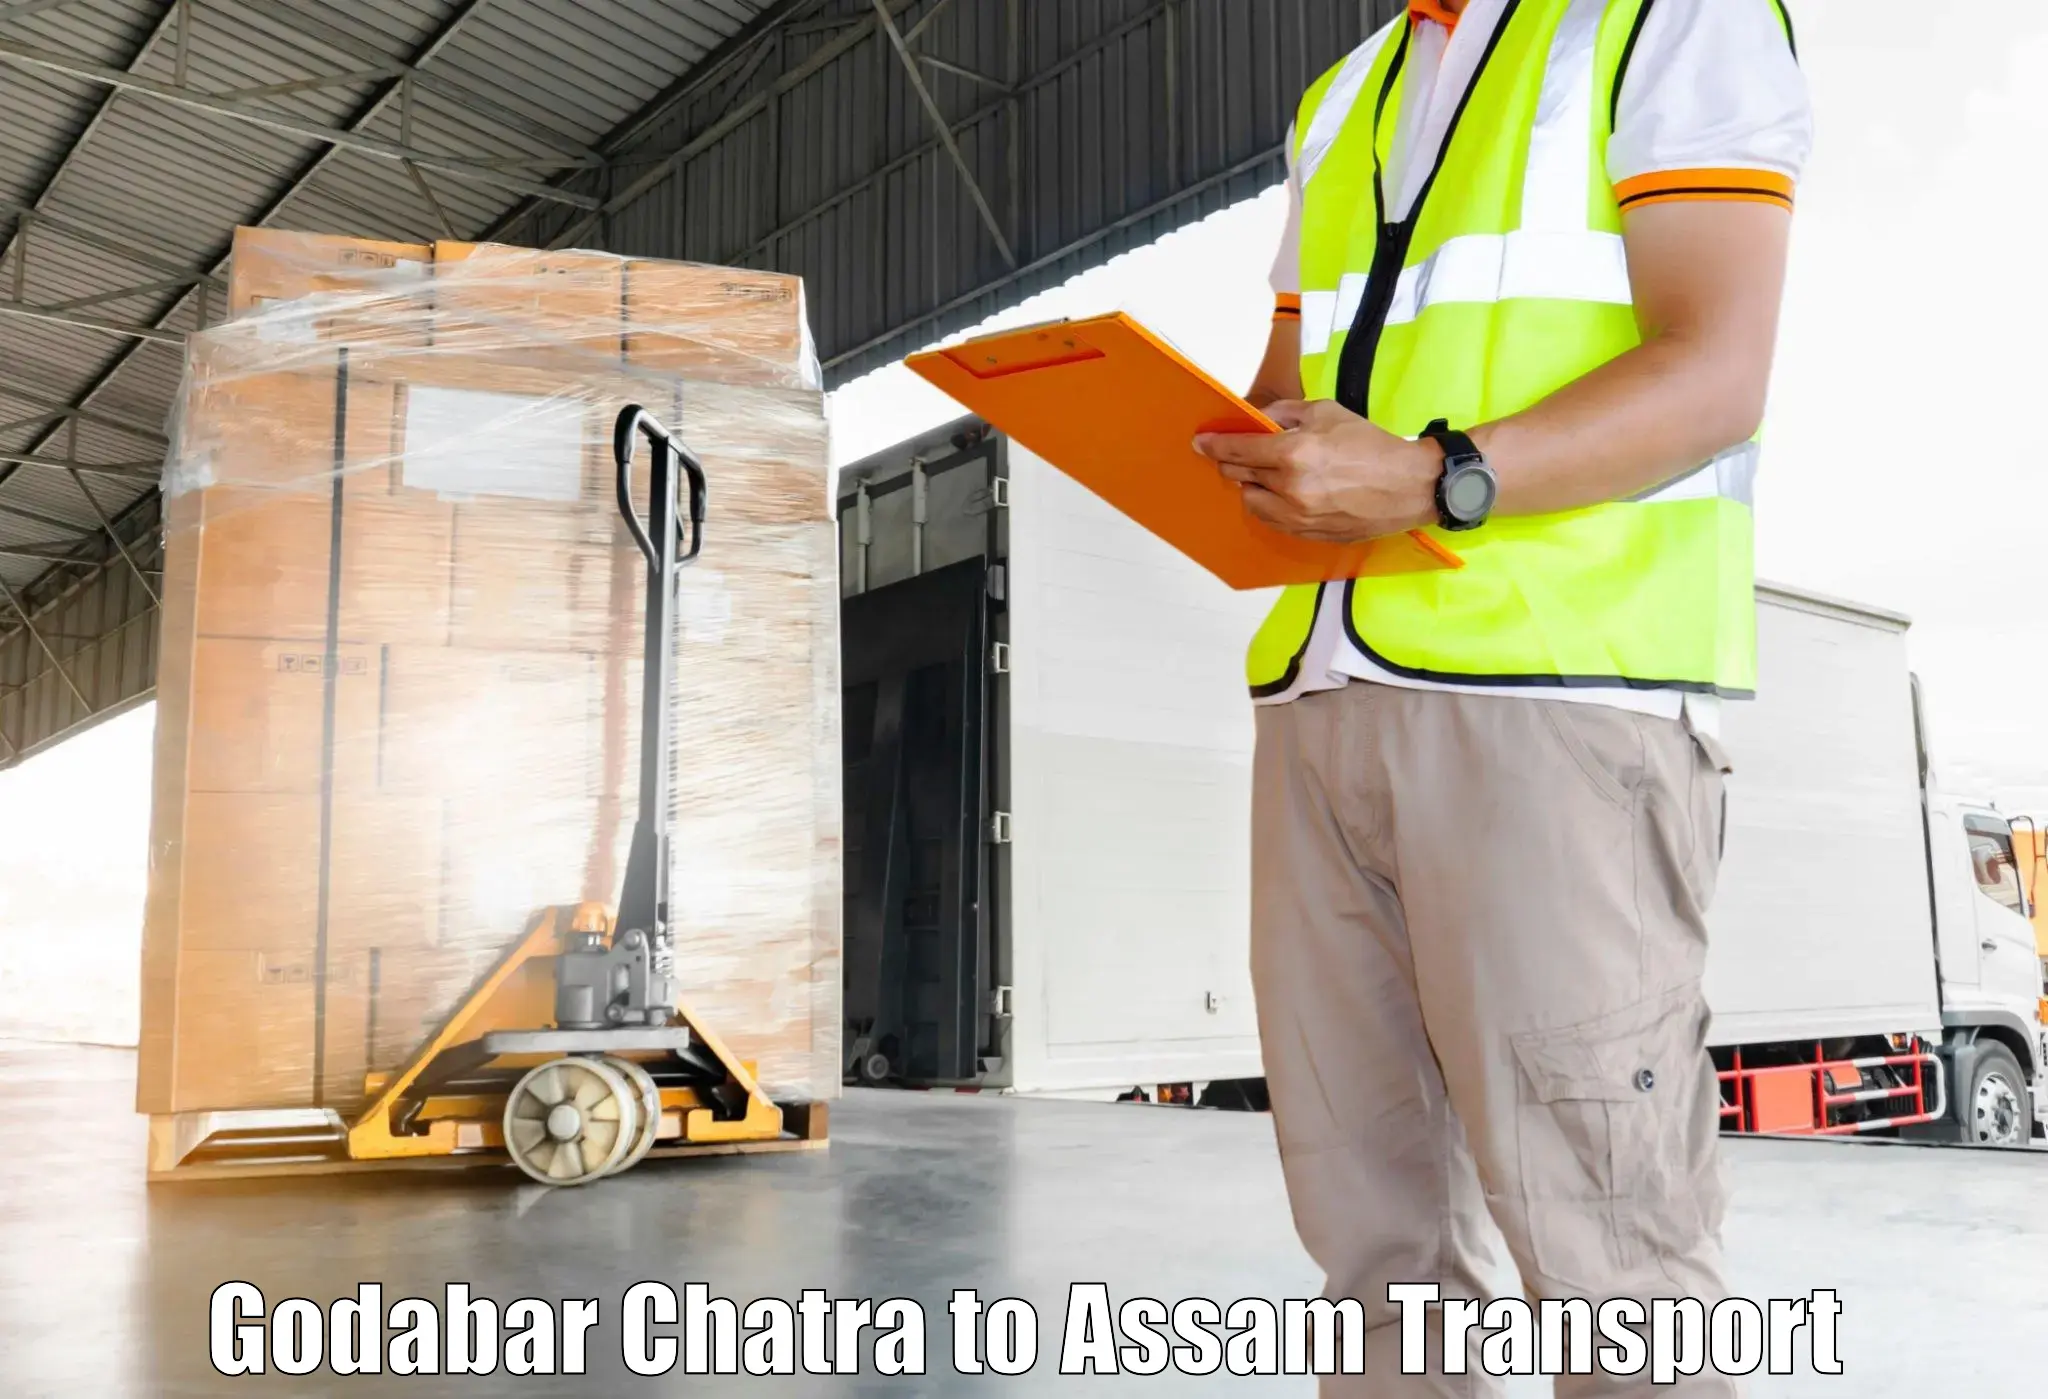 Cargo transportation services Godabar Chatra to Kalaigaon